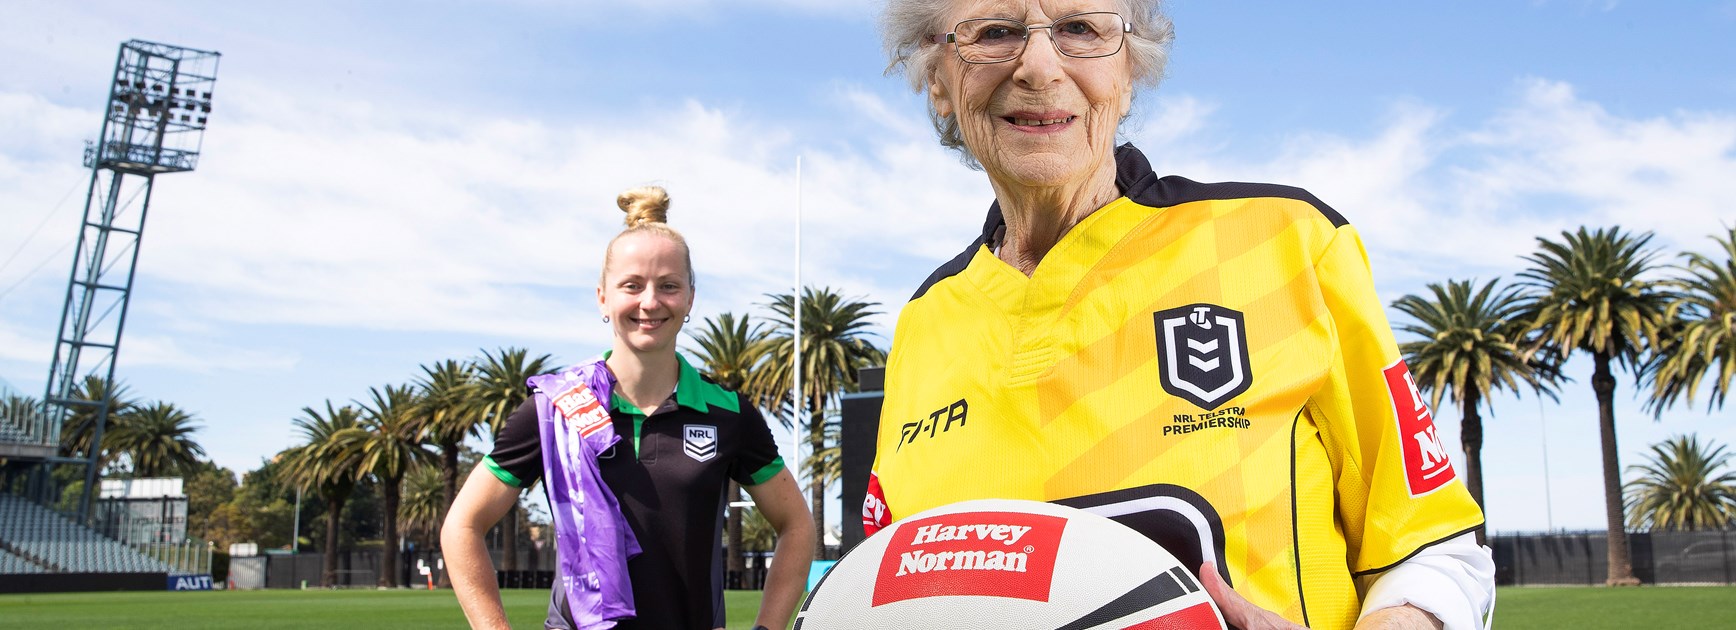 When Deidre met Belinda: Referees unite after 51 years